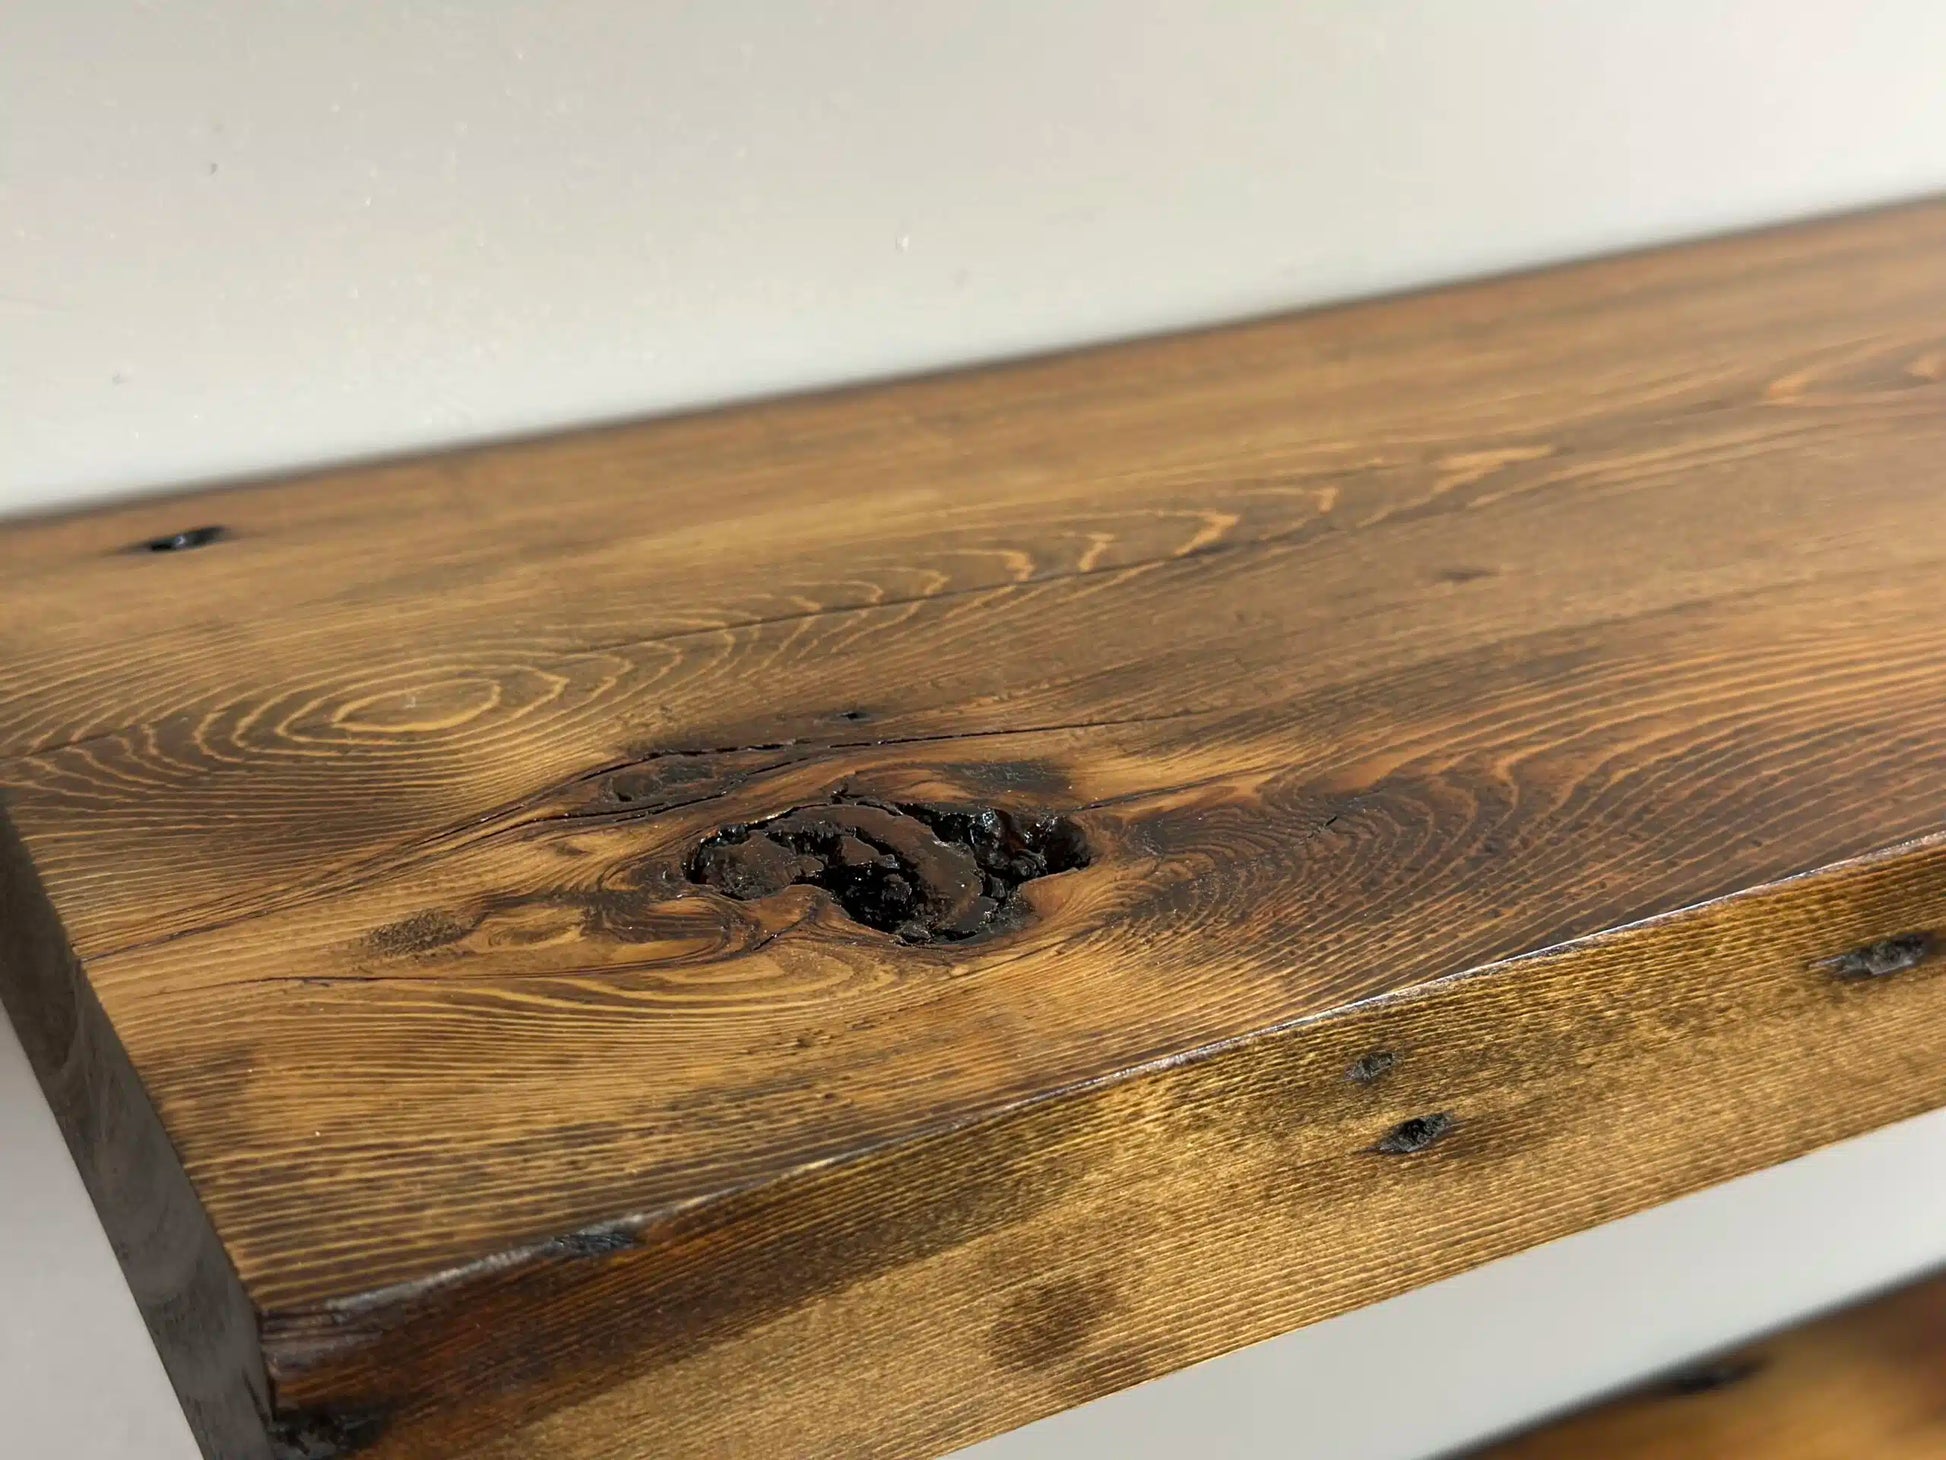 Your Custom Desk- Live Edge Desk- Industrial Desk- Rustic Desk- Wooden -  Kentucky LiveEdge